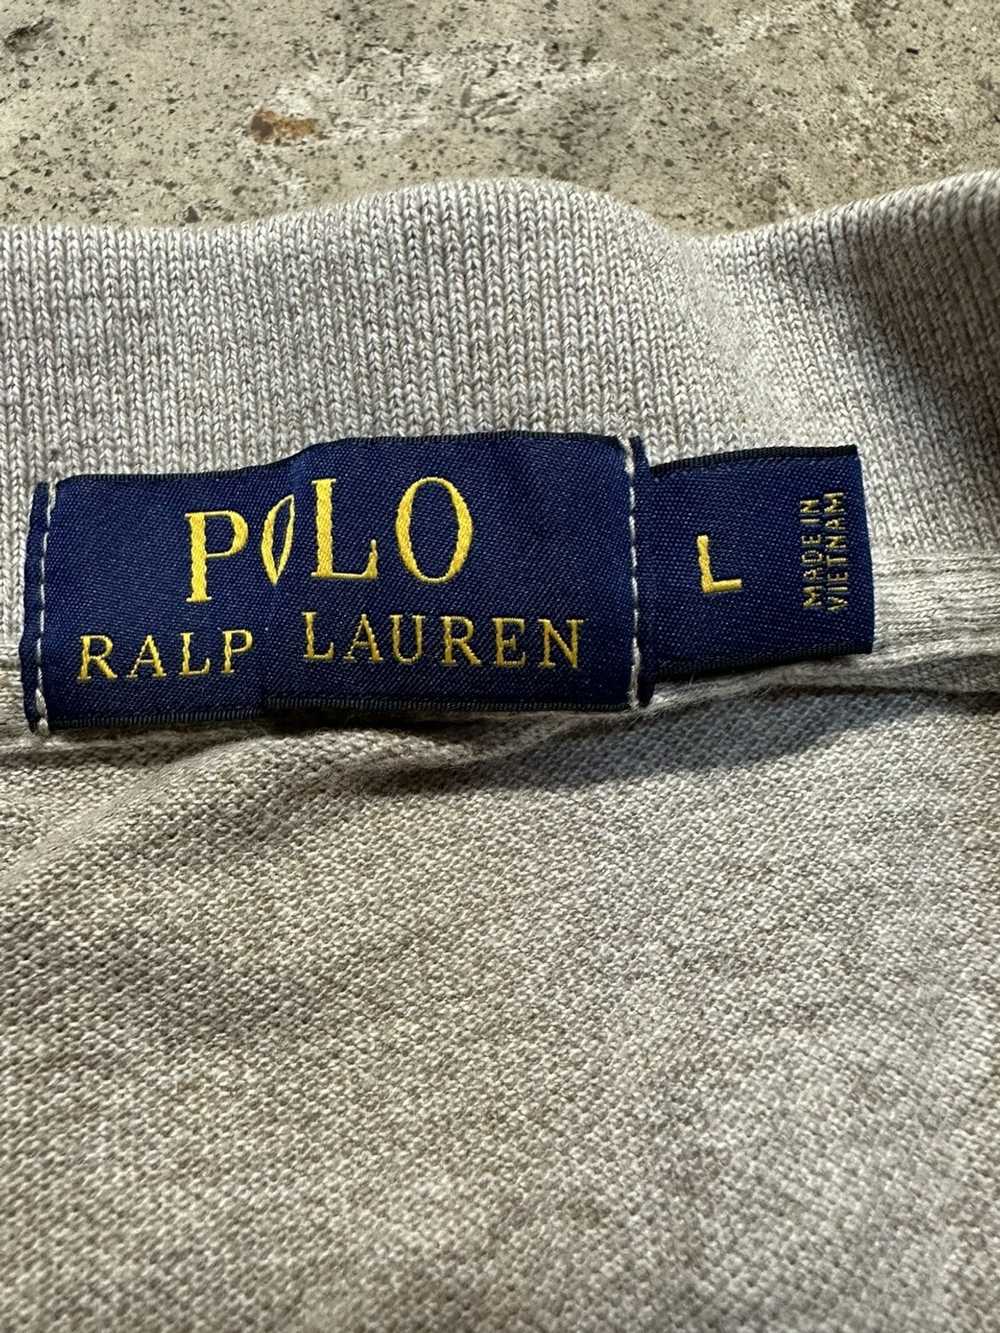 Polo Ralph Lauren GREY POLO RALPH LAUREN POLO BRO… - image 3